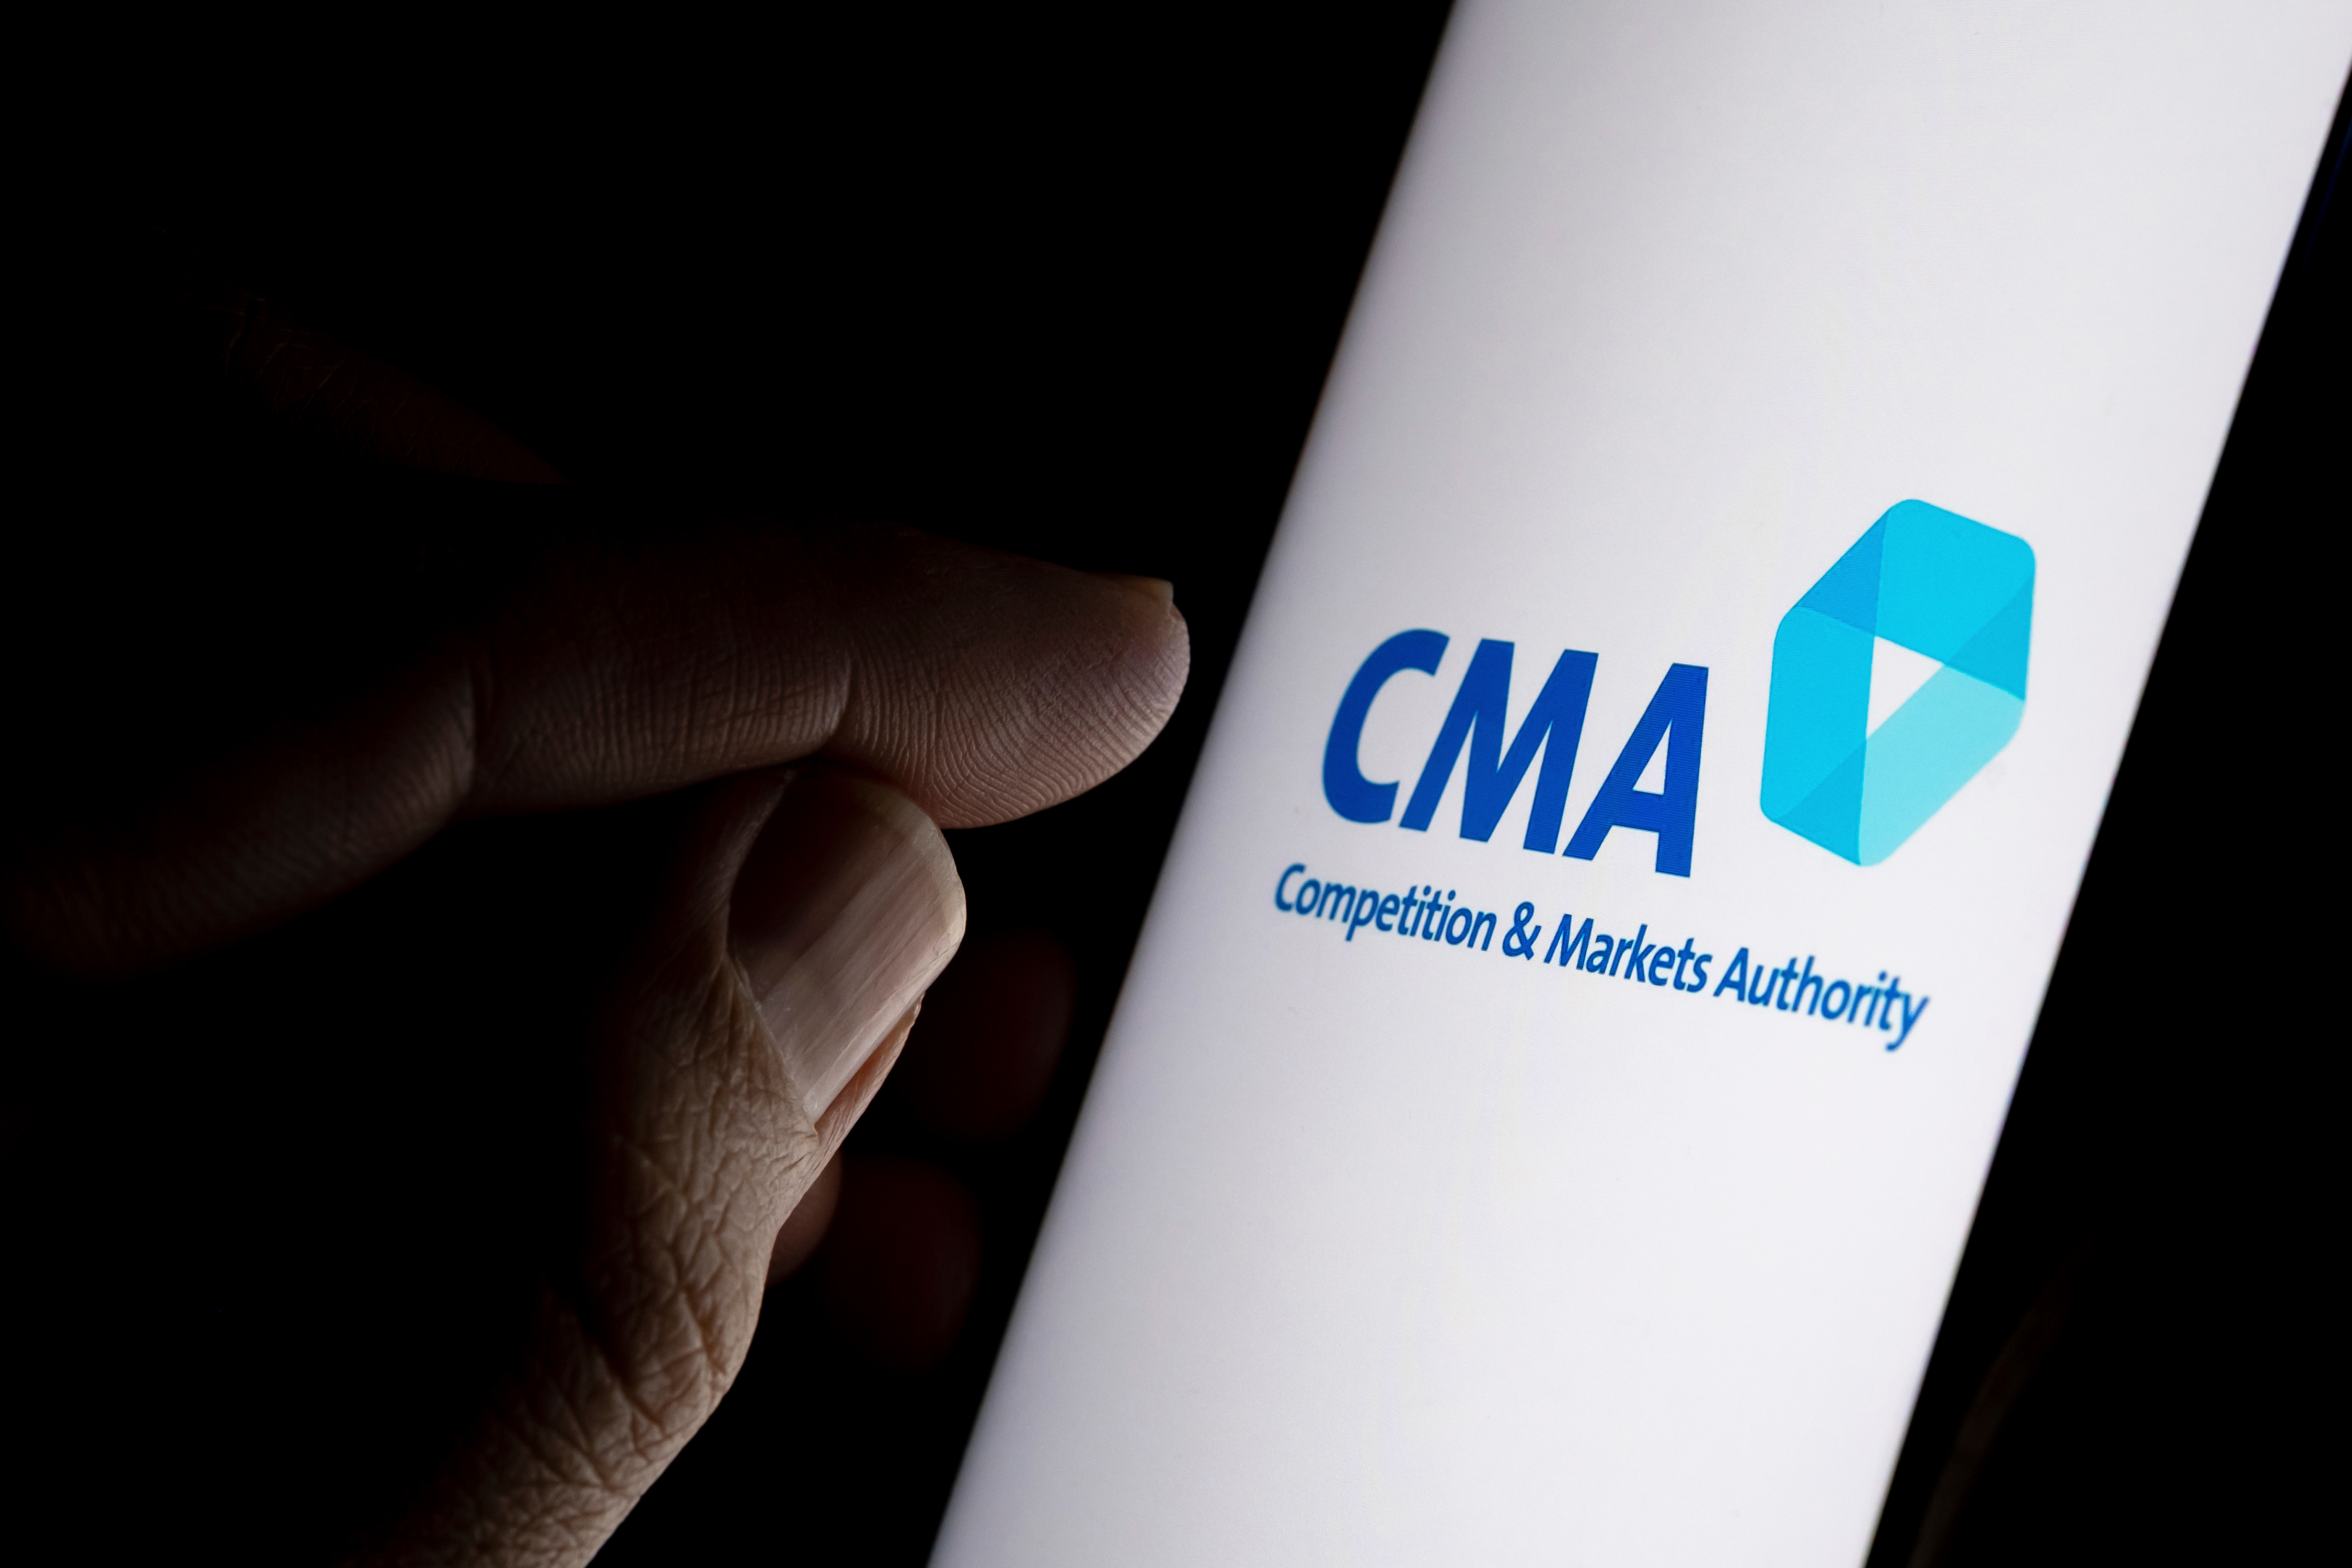 CMA's logo on screen